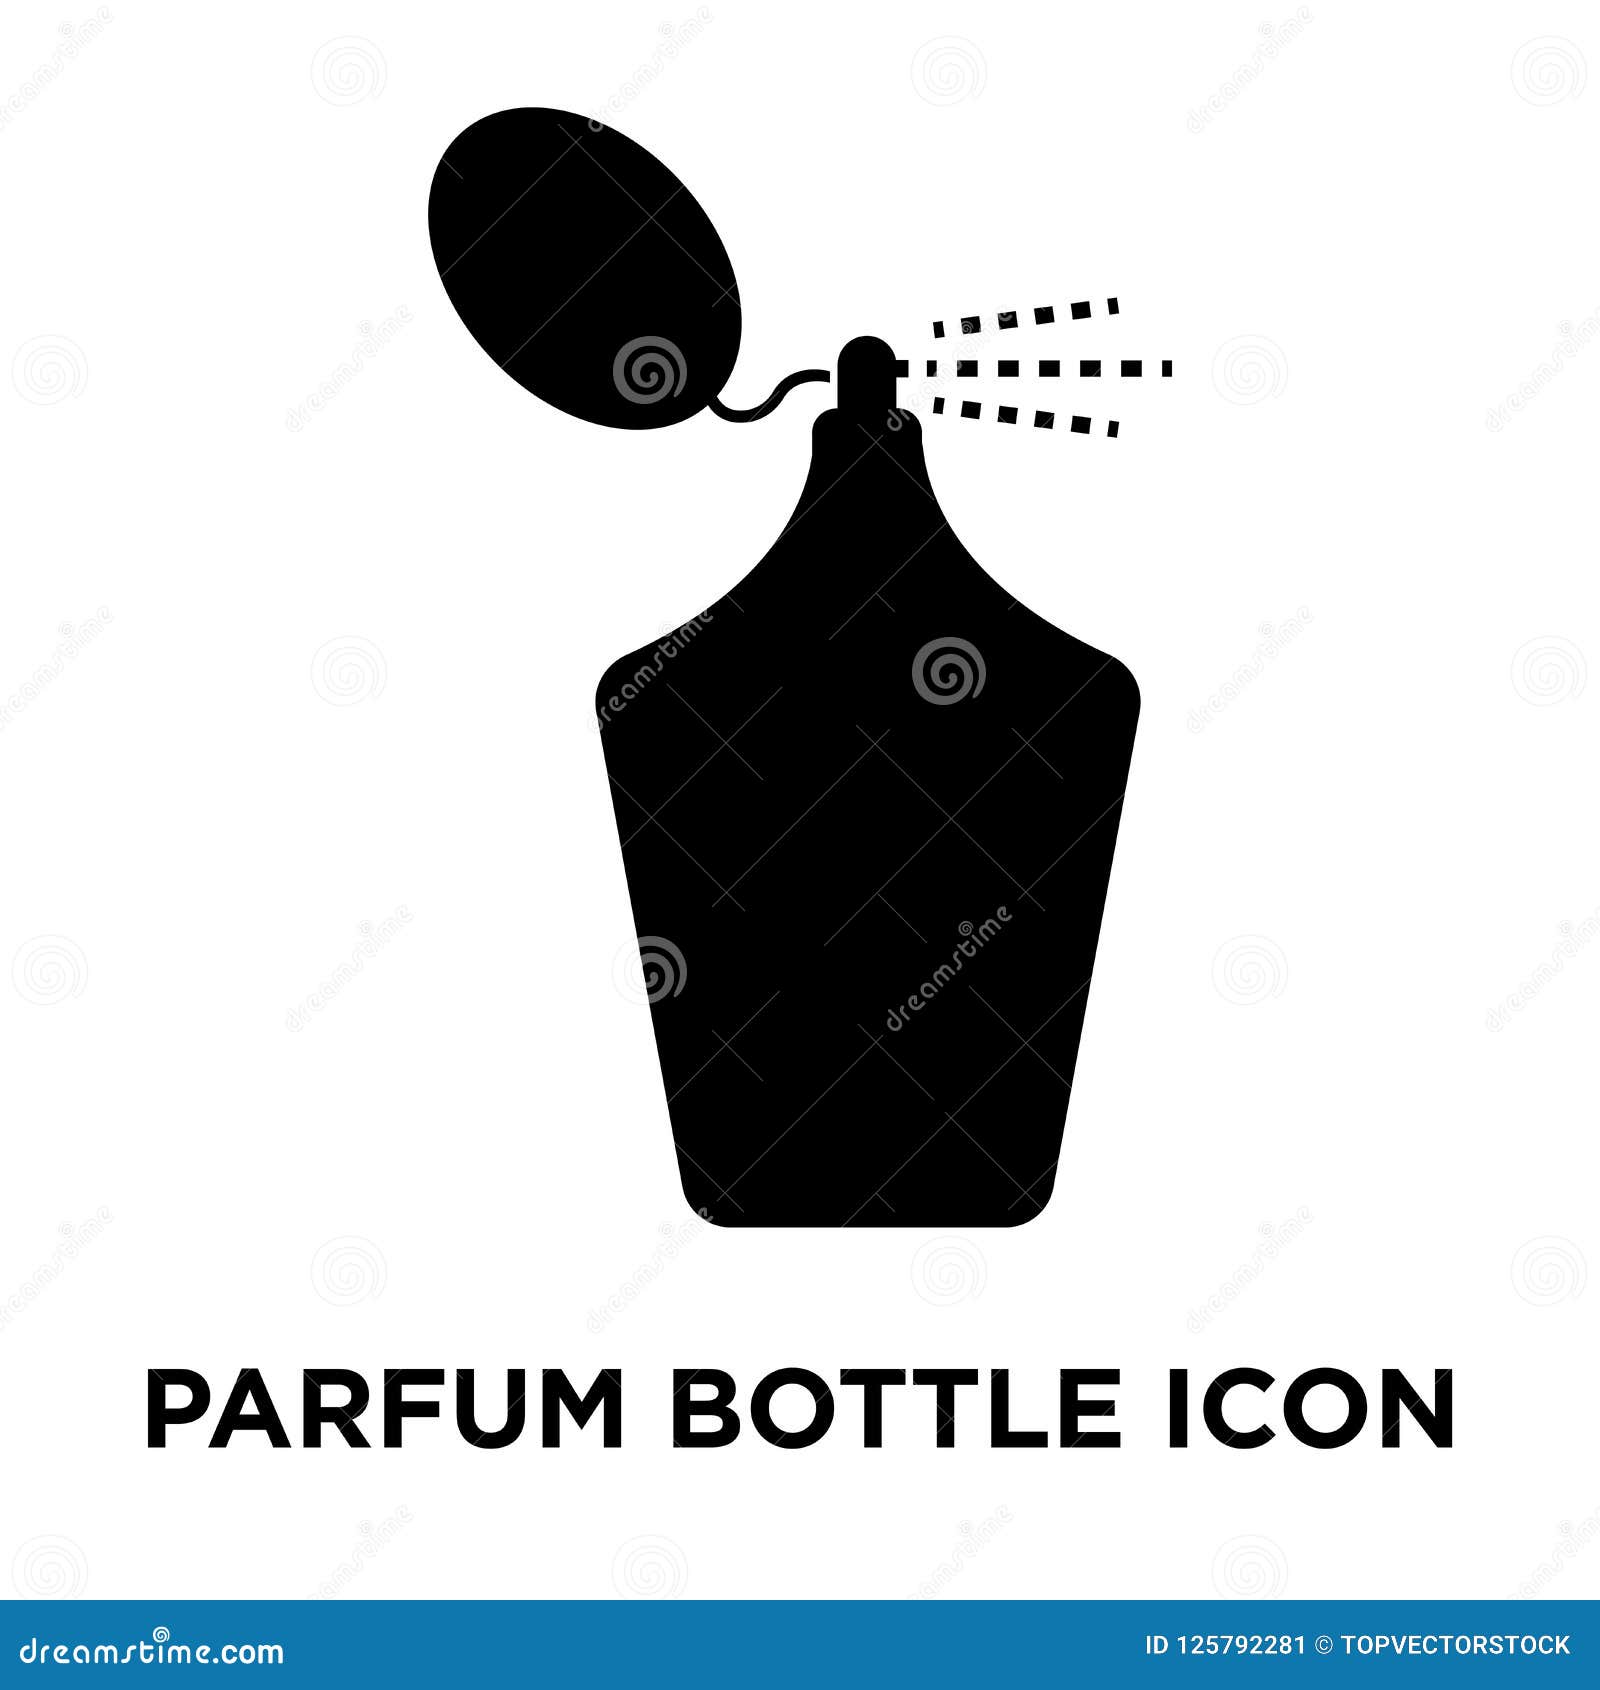 parfum bottle iconÃÂ    on white background, logo c